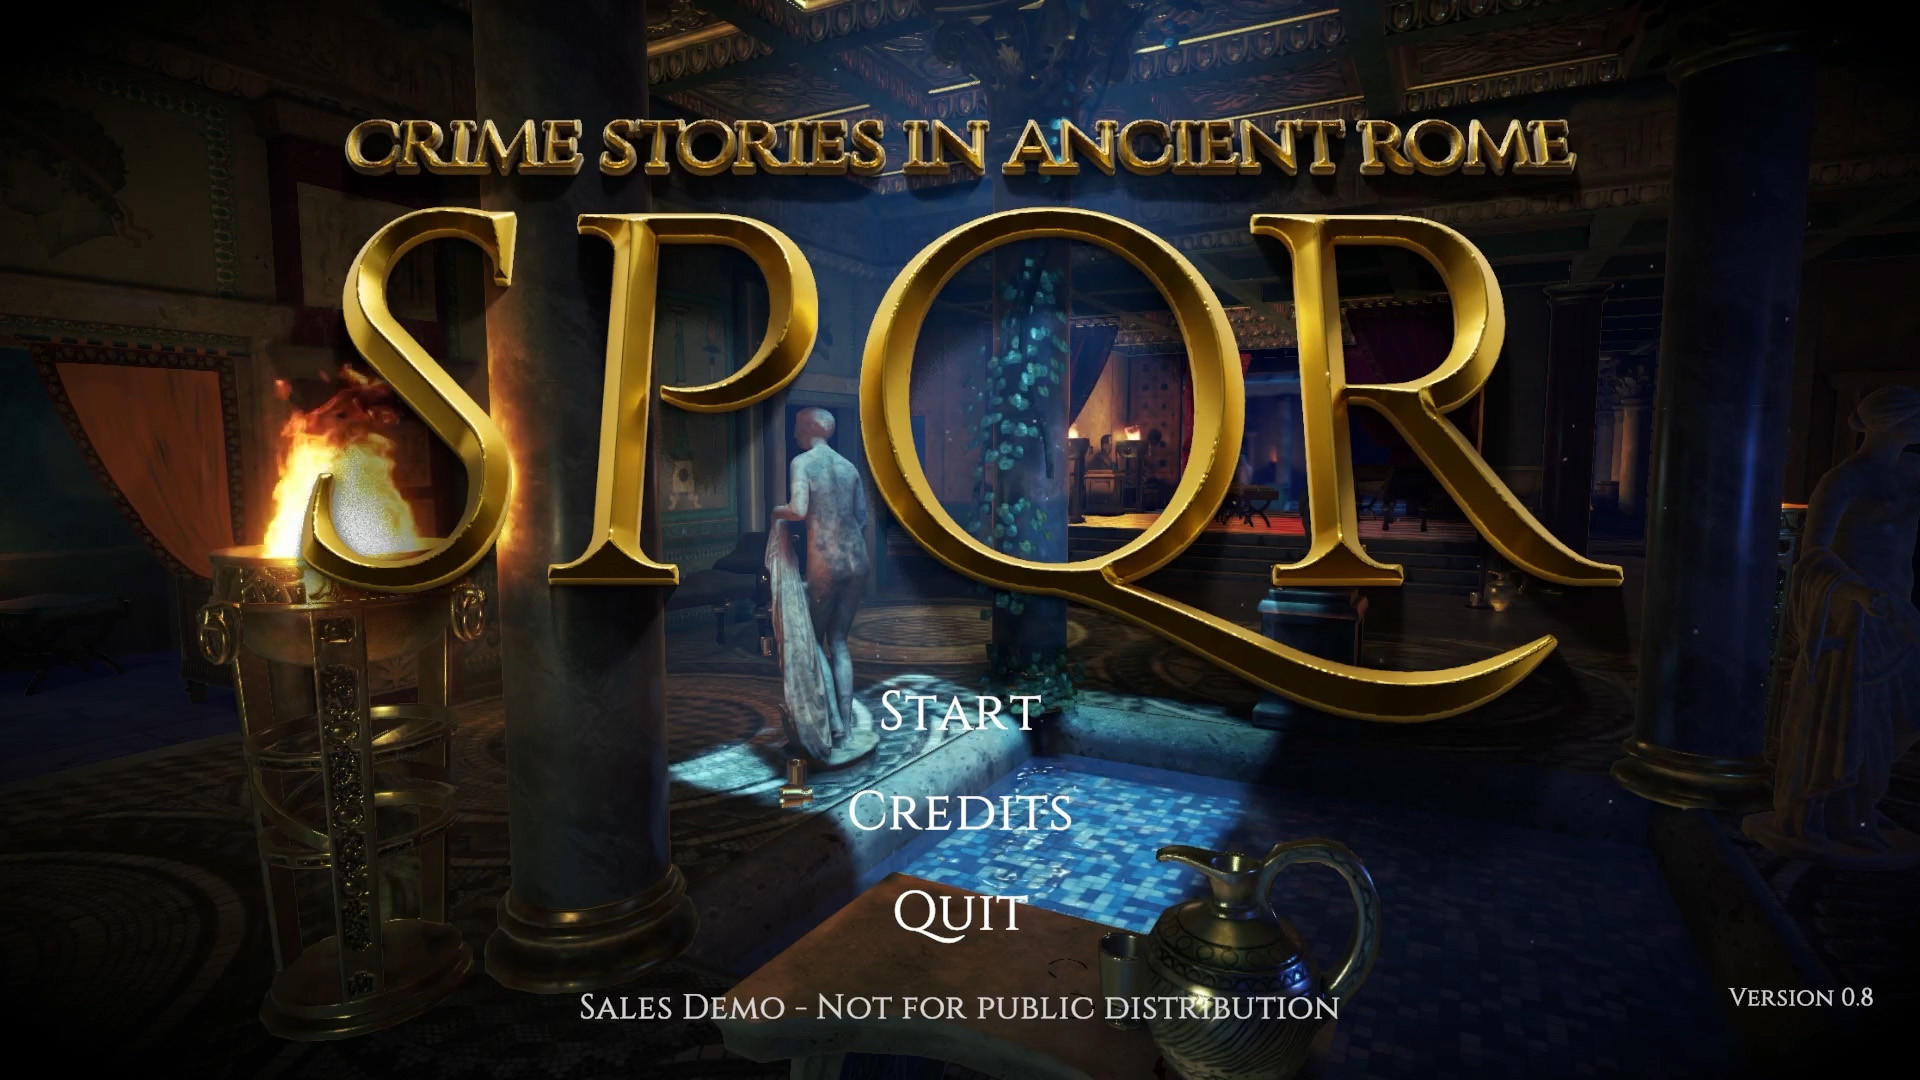 Screenshot 1 of SPQR - เรื่องราวอาชญากรรมในกรุงโรมโบราณ 